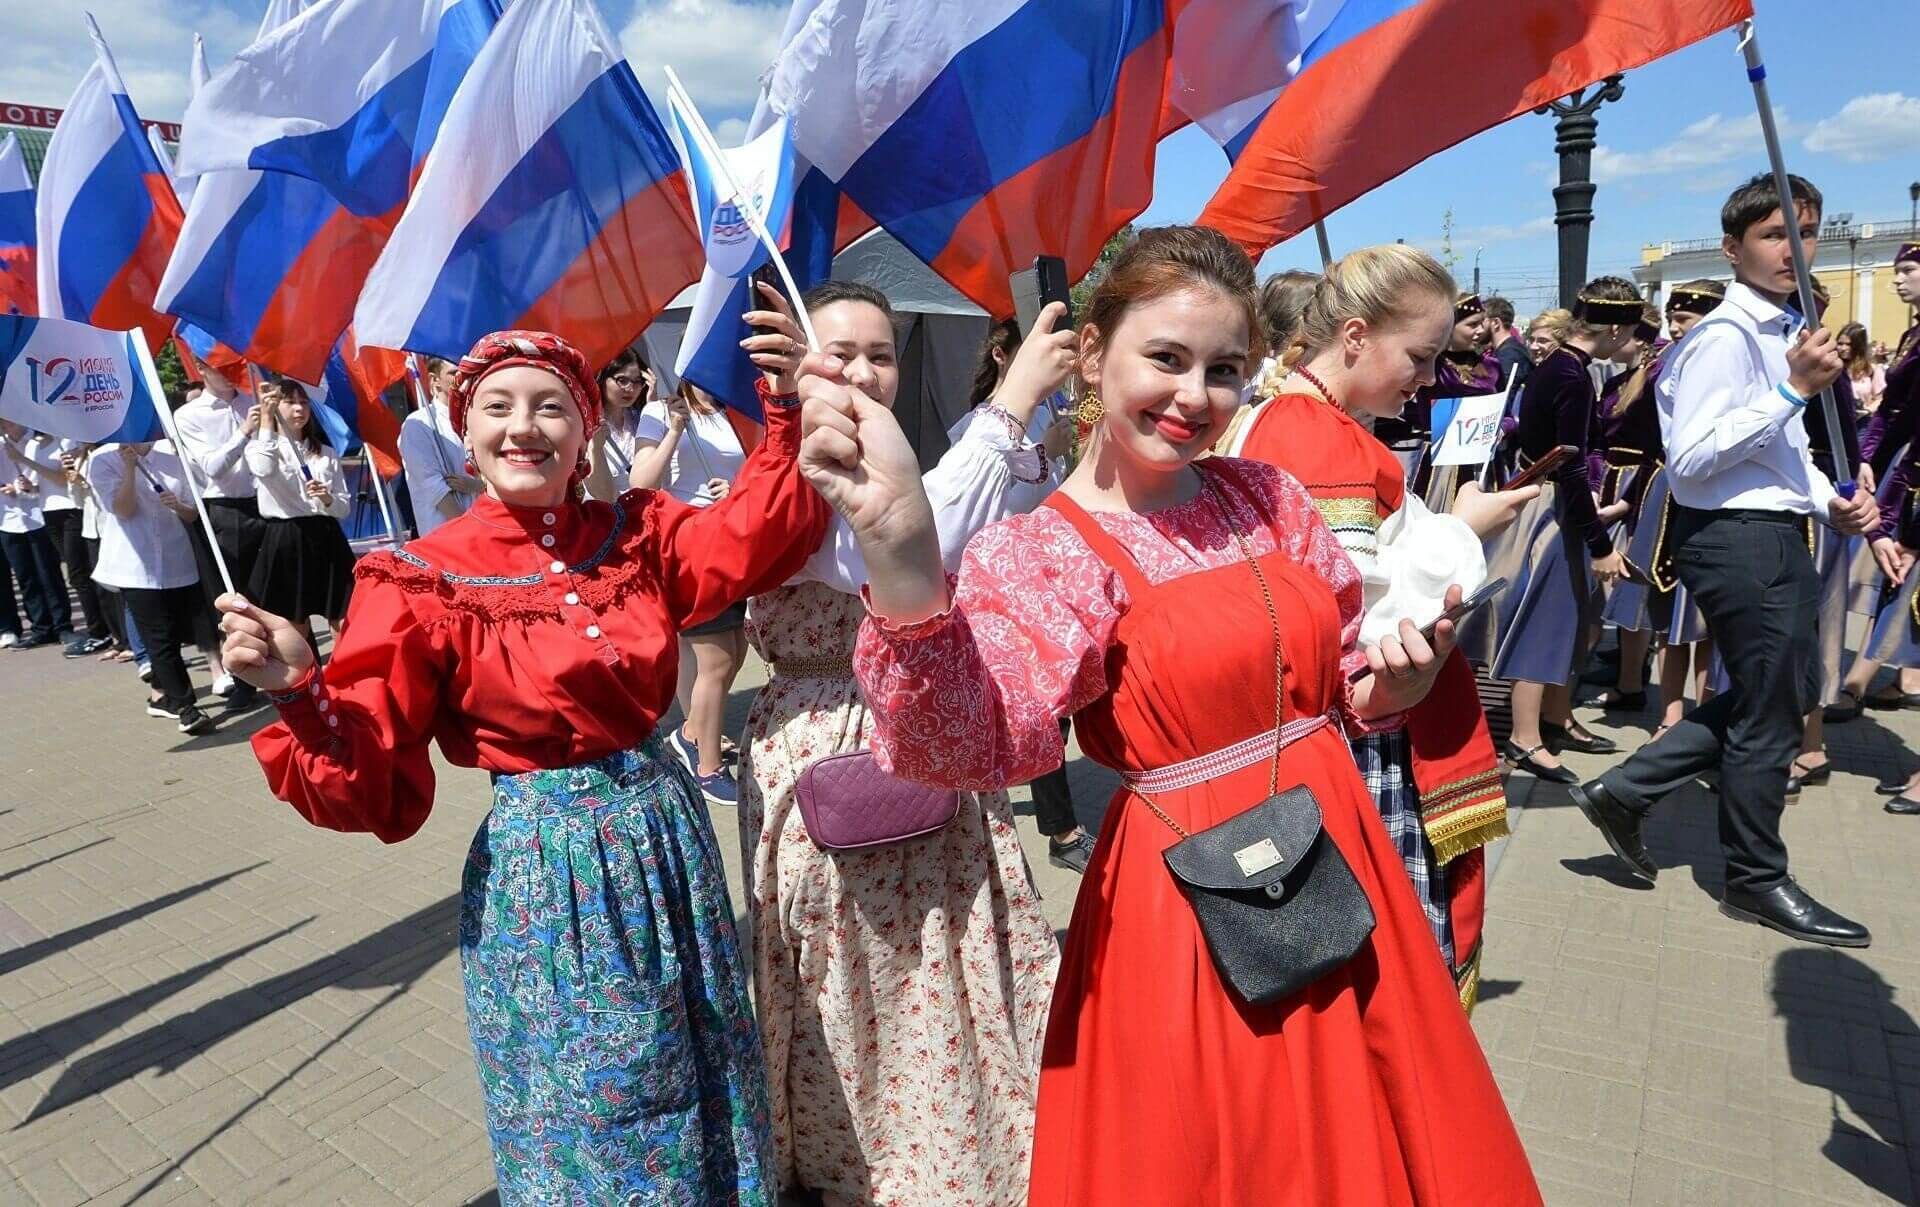 В Городском парке пройдет праздничная программа «Россия в сердце навсегда». Начало 18.30 – вход свободный.